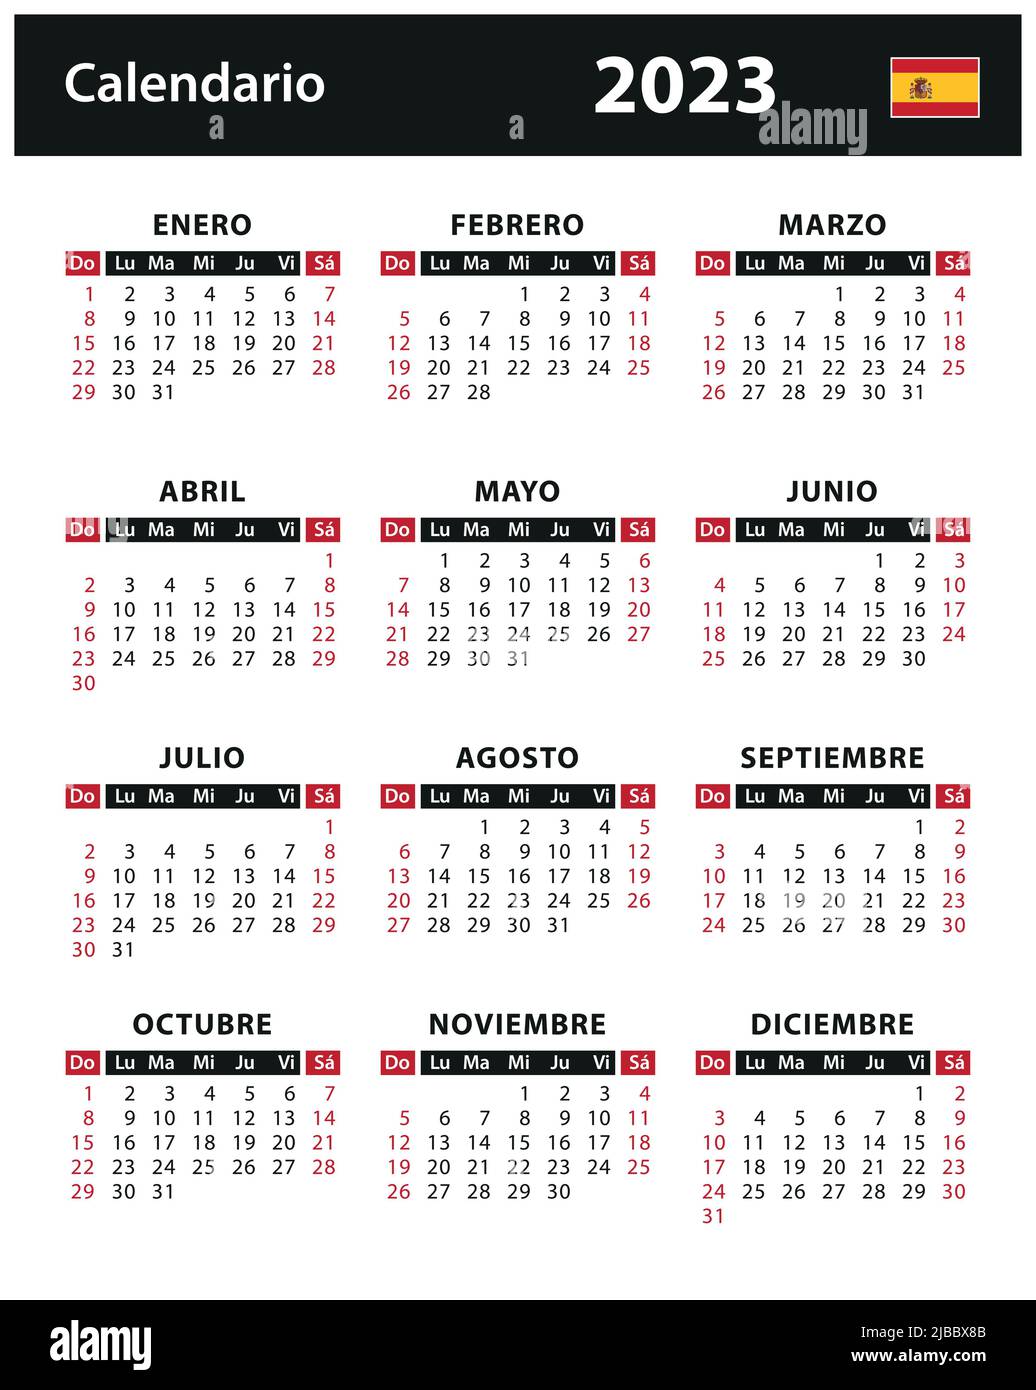 2023 Calendar - vector stock illustration. Spain, Spanish version | Calendario 2023 - ilustración vectorial de stock. España, versión en español Stock Vector